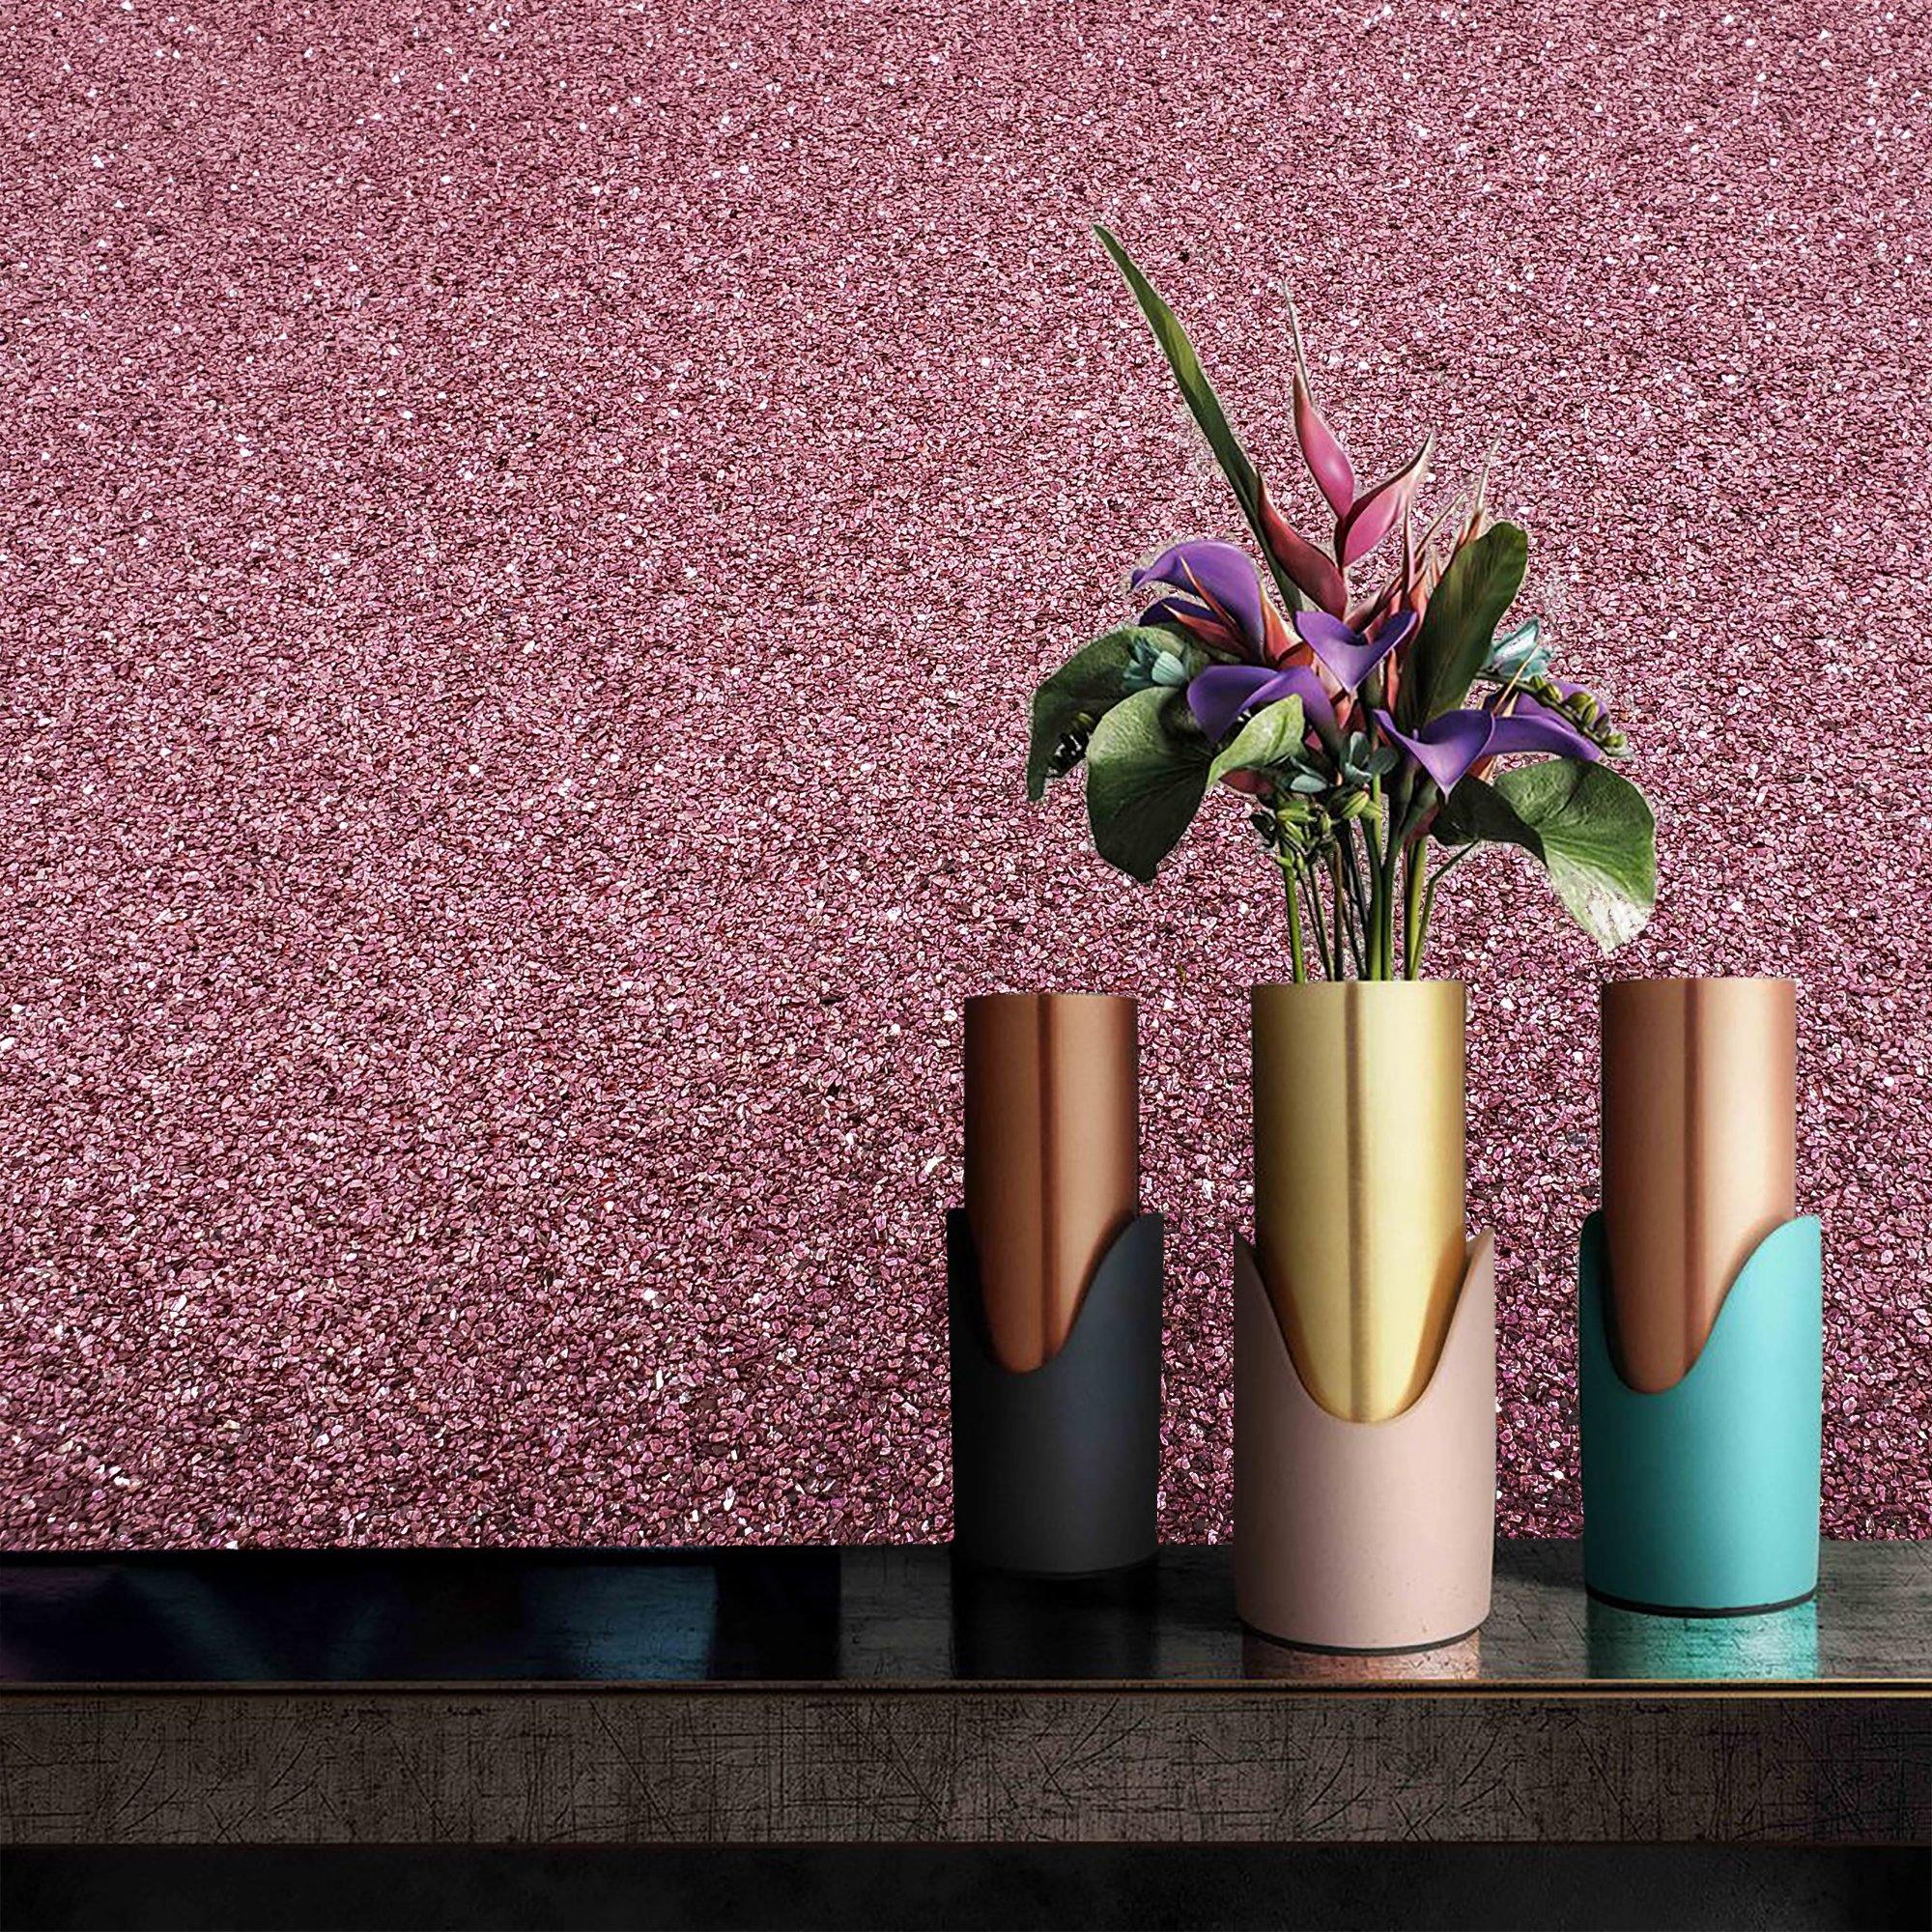 pink glitter flower wallpaper